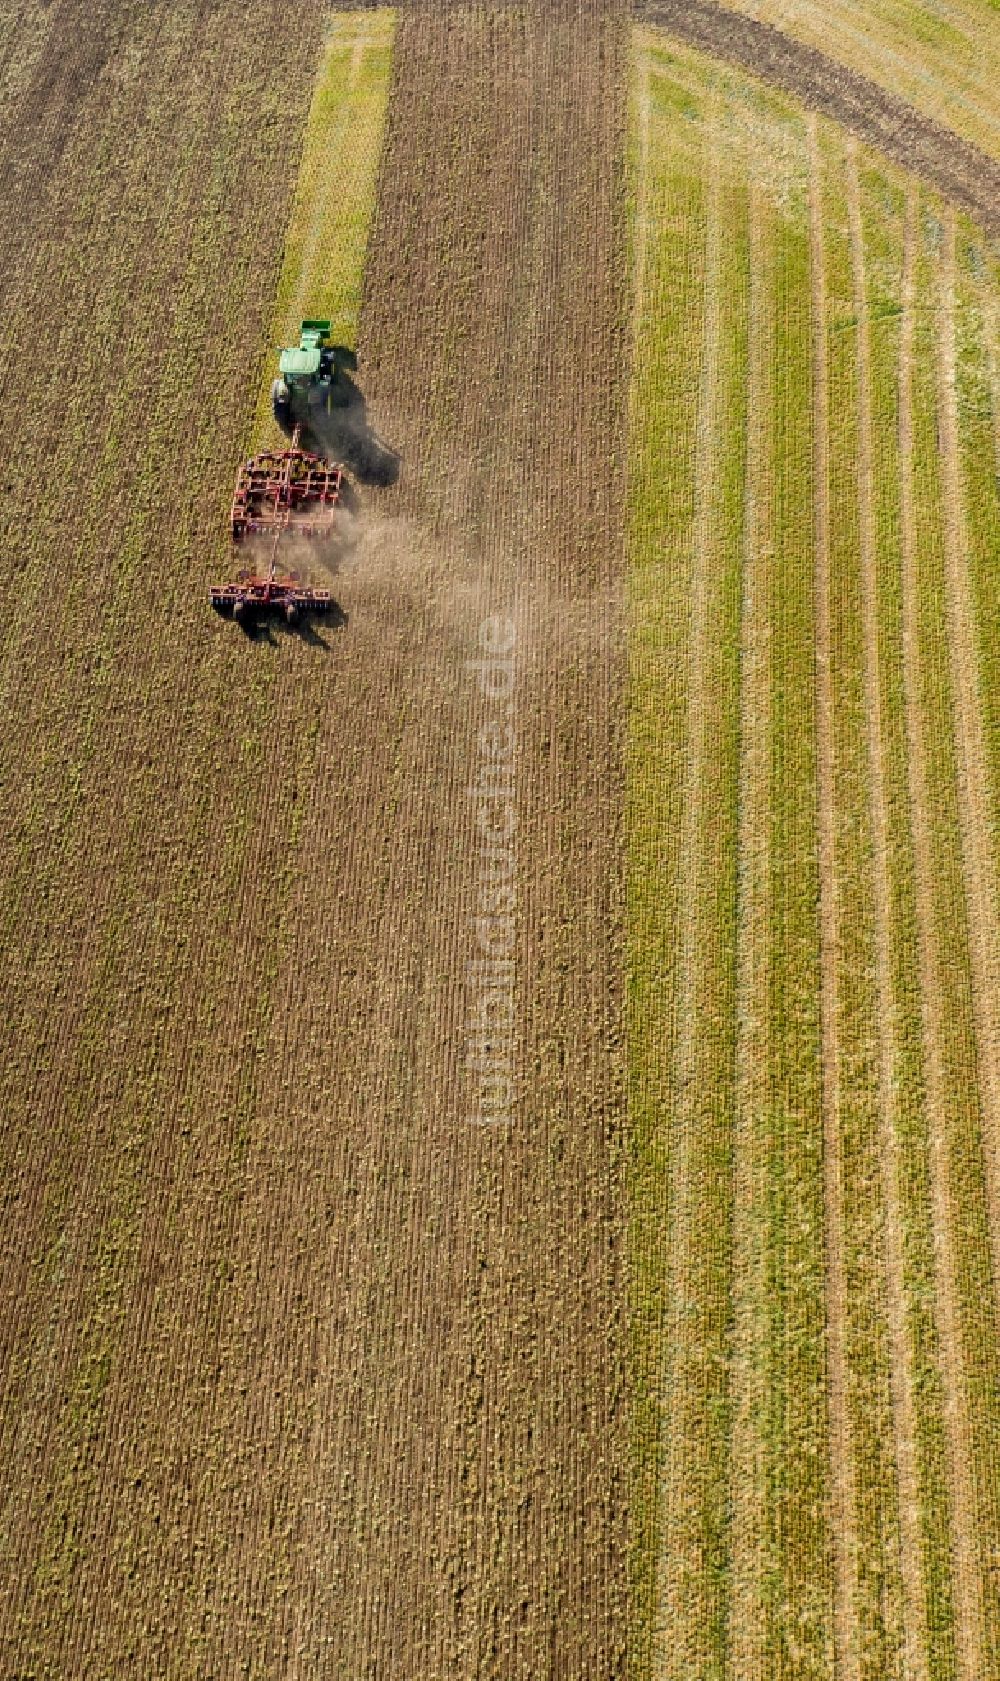 Luftaufnahme Teutschenthal - Umpflugarbeiten und Umschichtung der Erde durch einen Traktor mit Pflug auf landwirtschaftlichen Feldern in Teutschenthal im Bundesland Sachsen-Anhalt, Deutschland